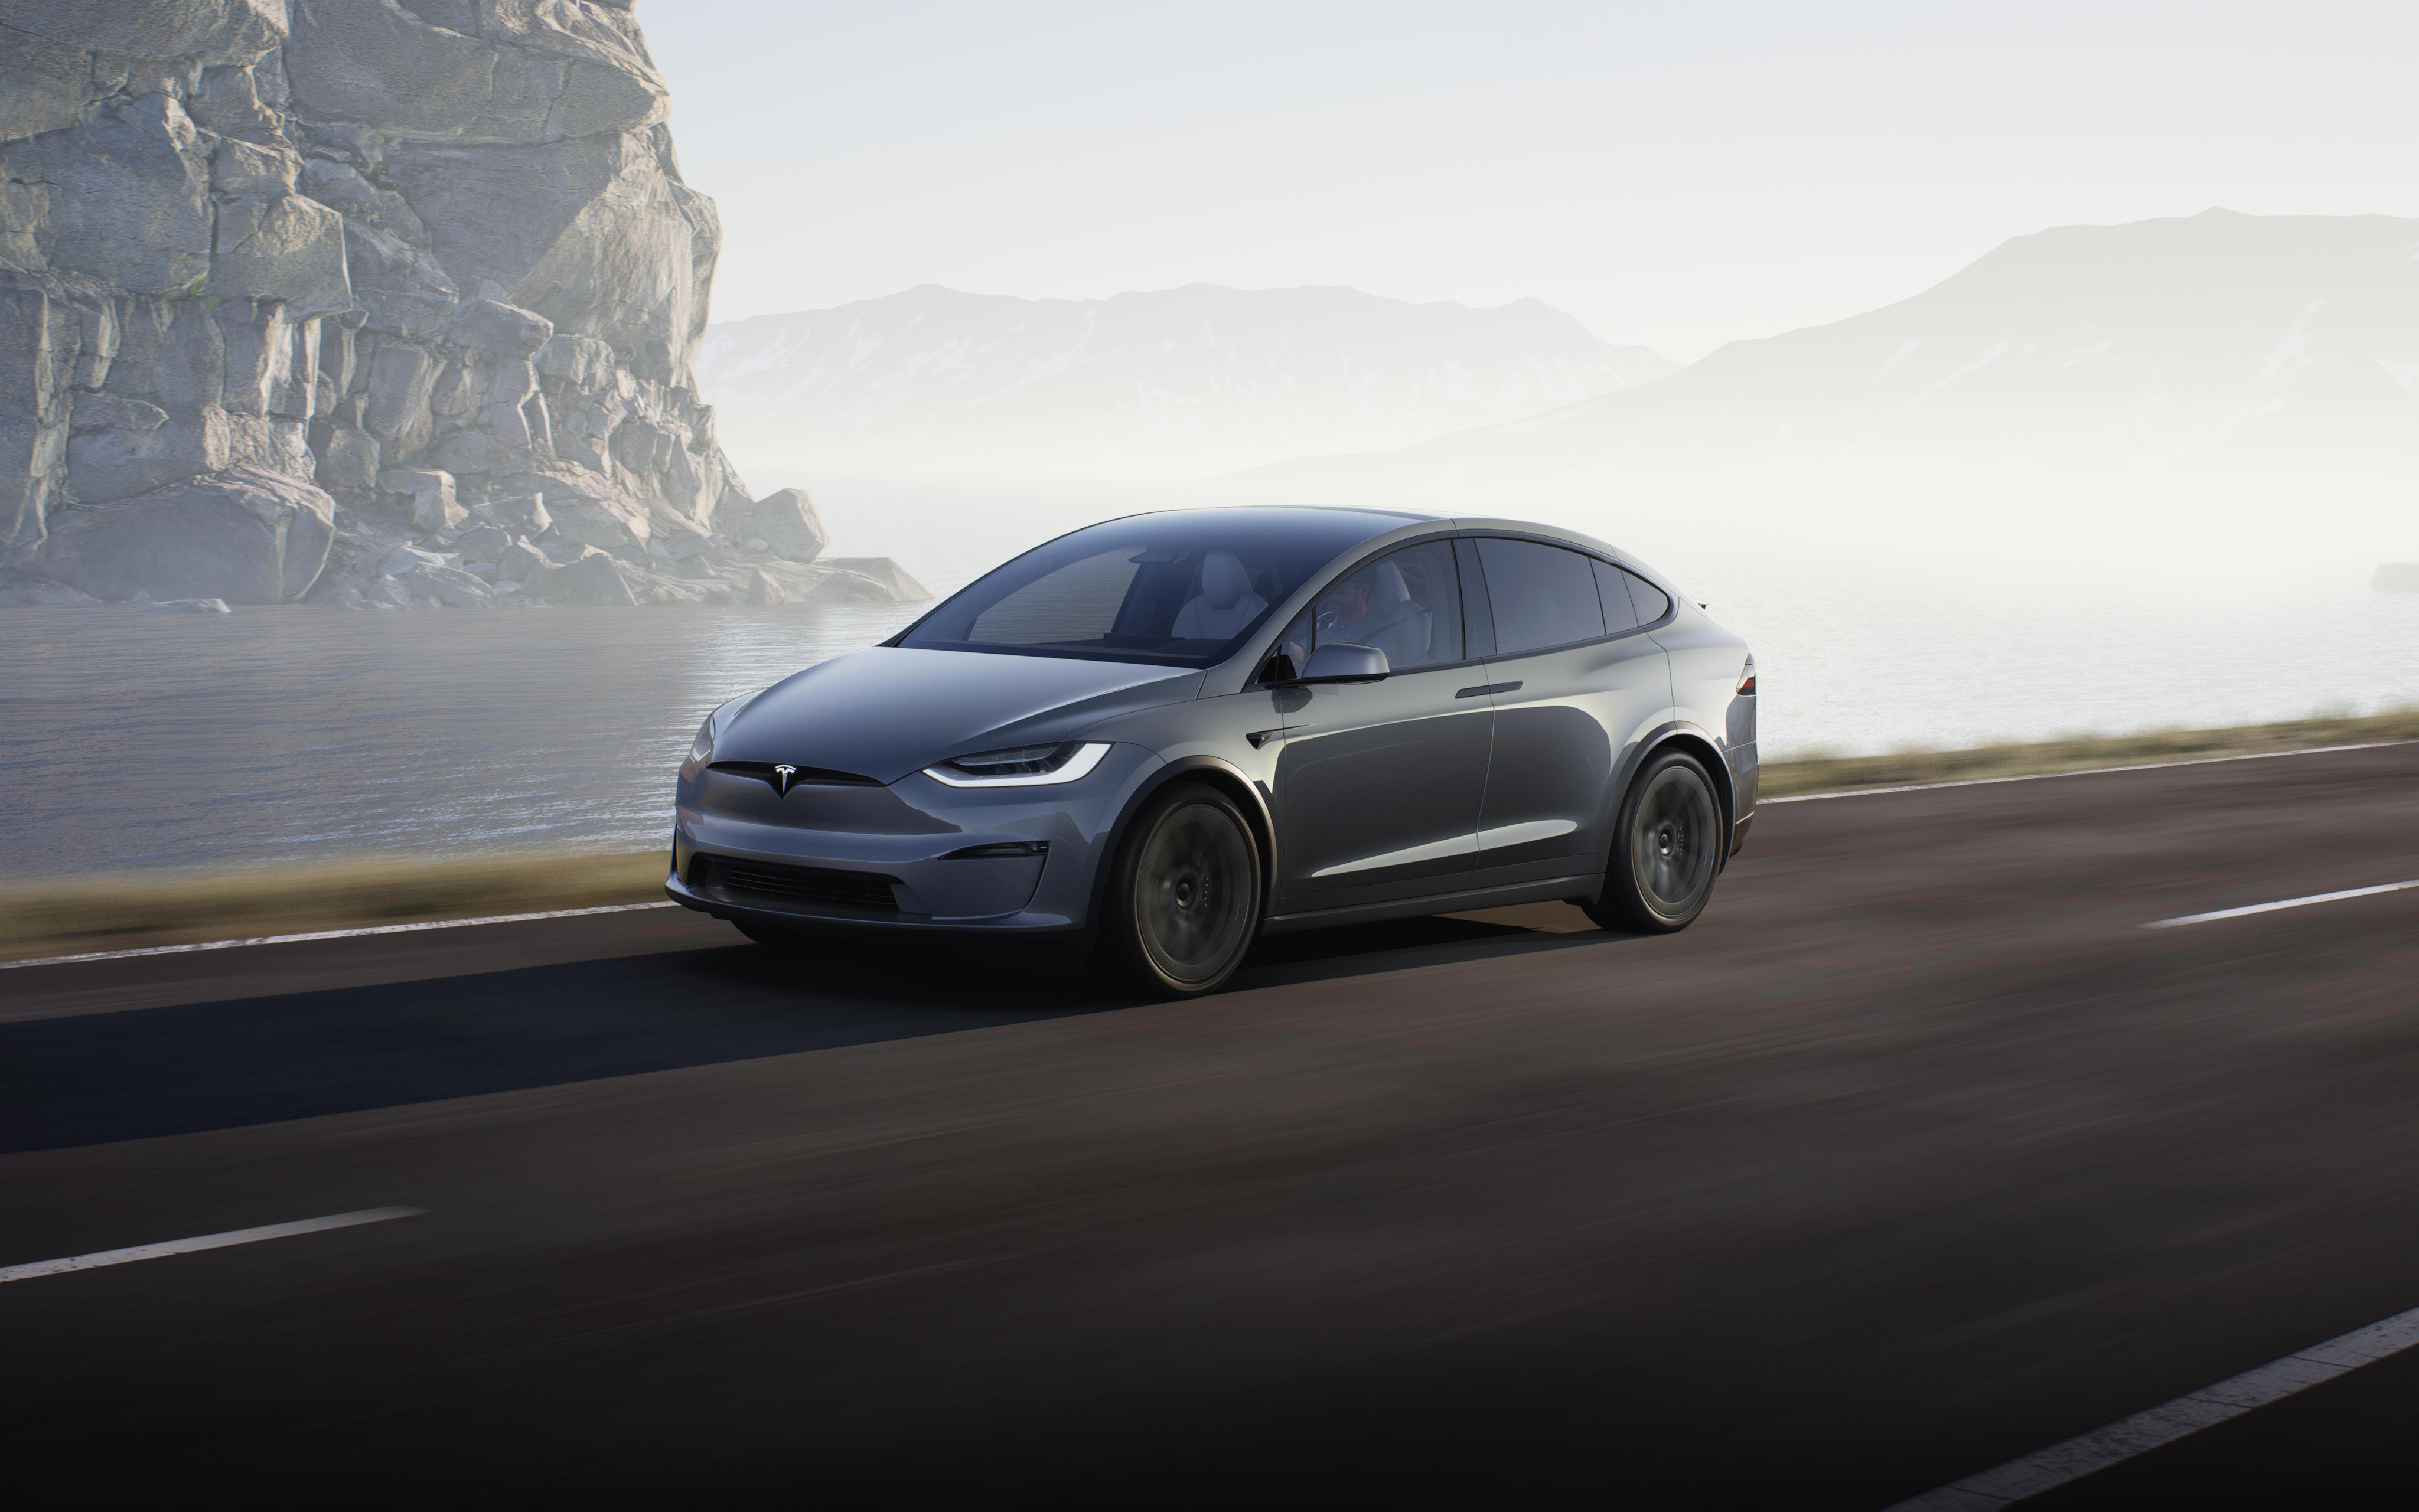 Tesla ustanawia nowy rekord dostaw samochodów elektrycznych - 1000-krotna sprzedaż w ciągu 10 lat